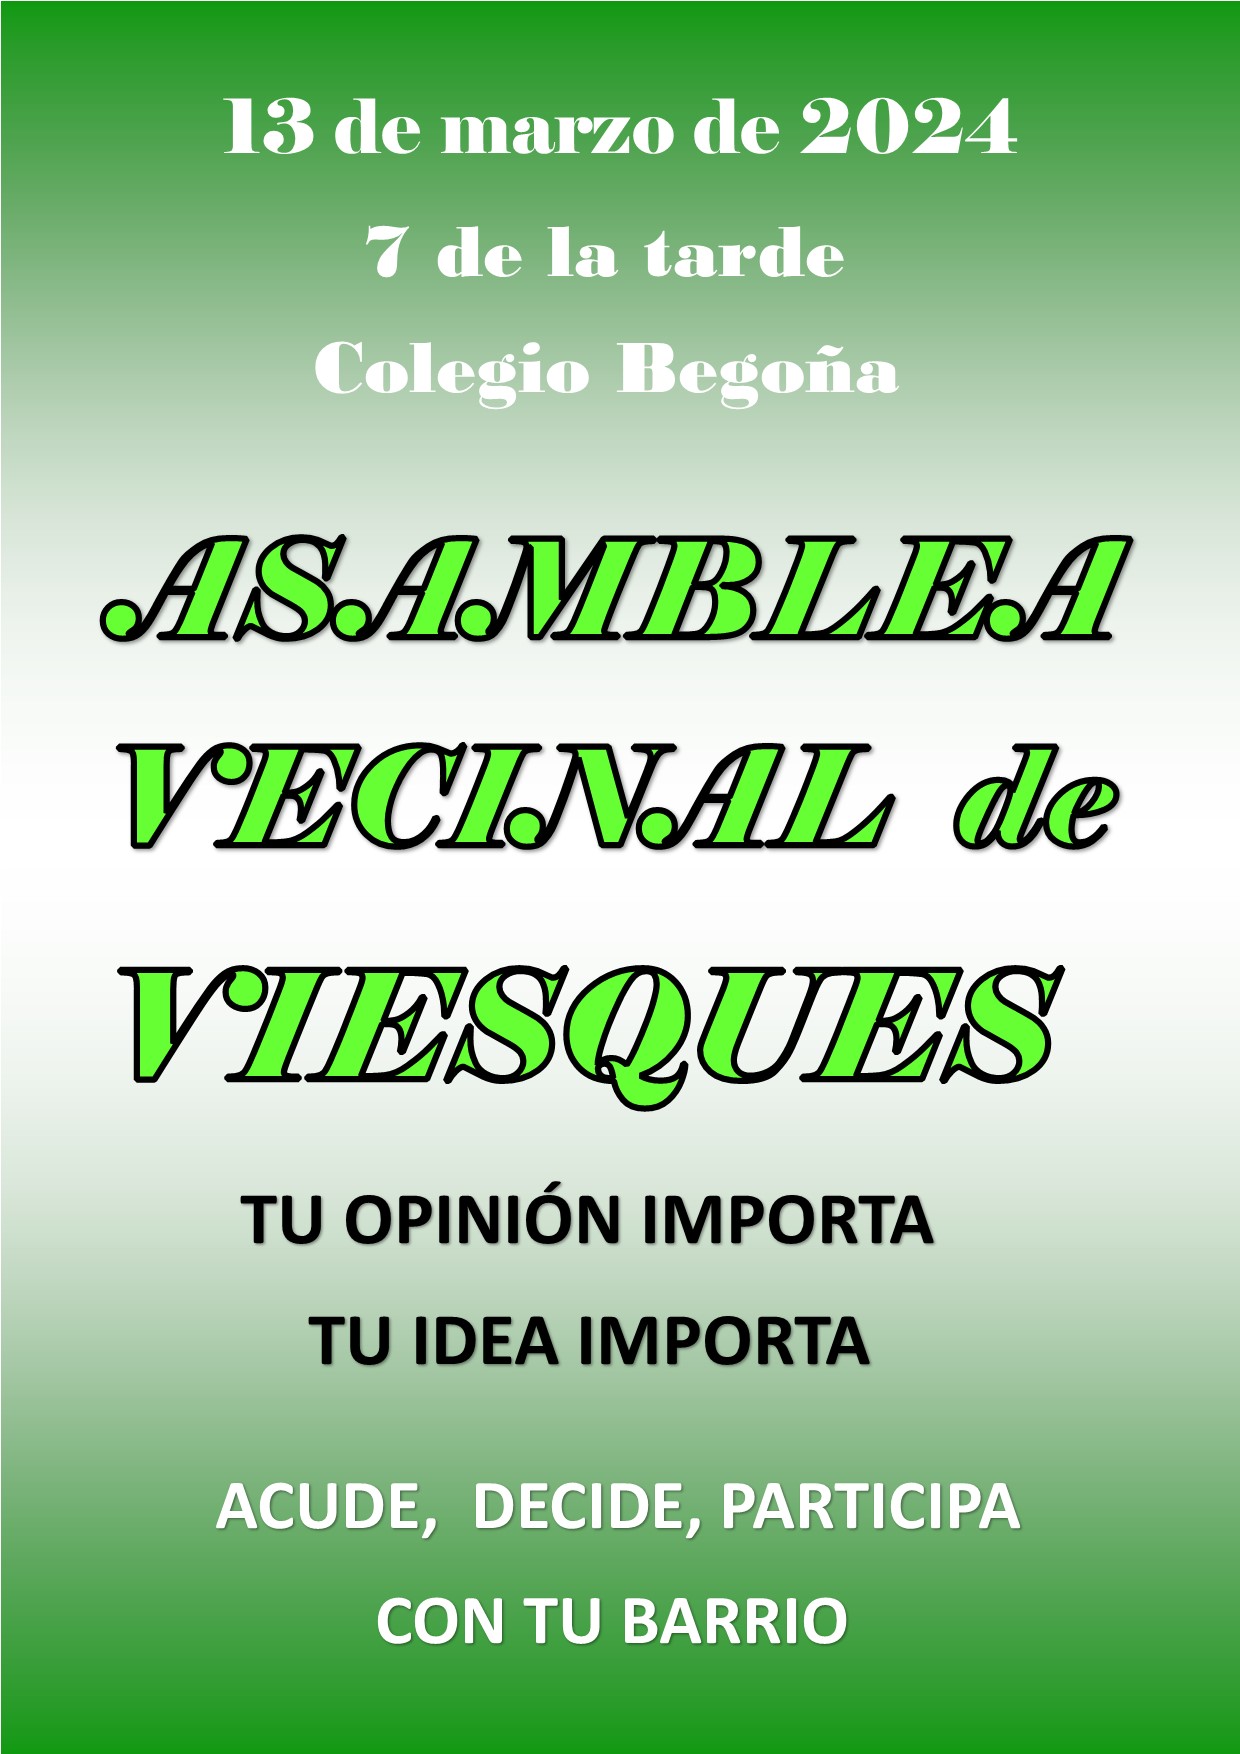 (c) Viesques.com